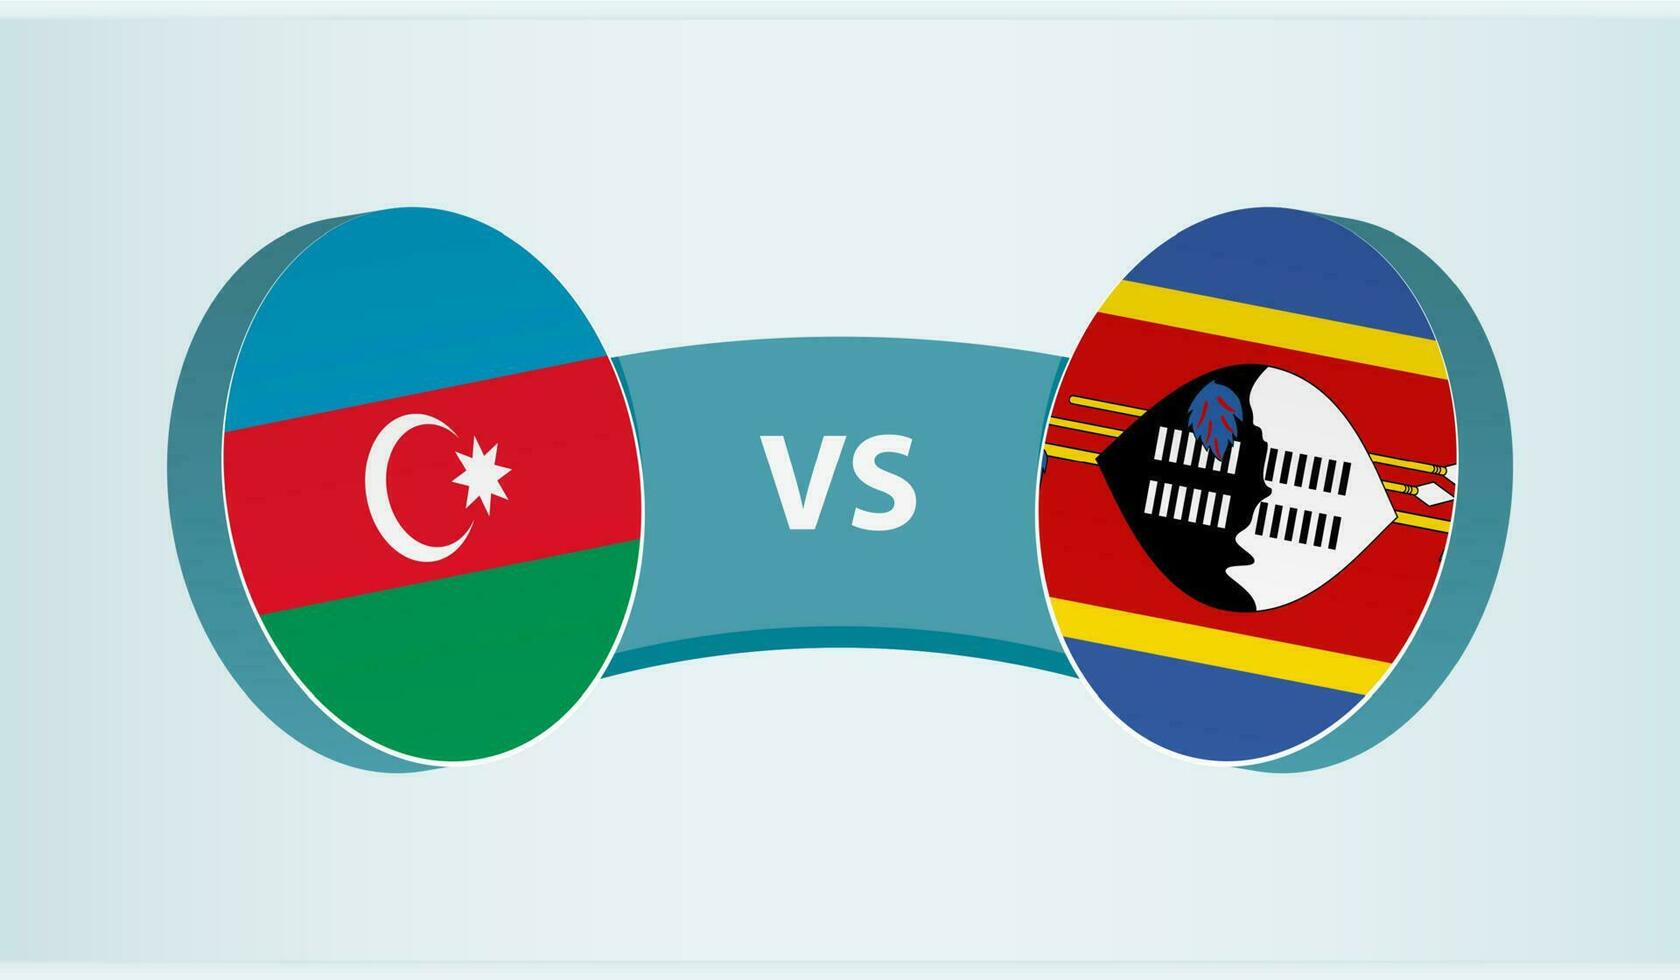 Azerbeidzjan versus Swaziland, team sport- wedstrijd concept. vector